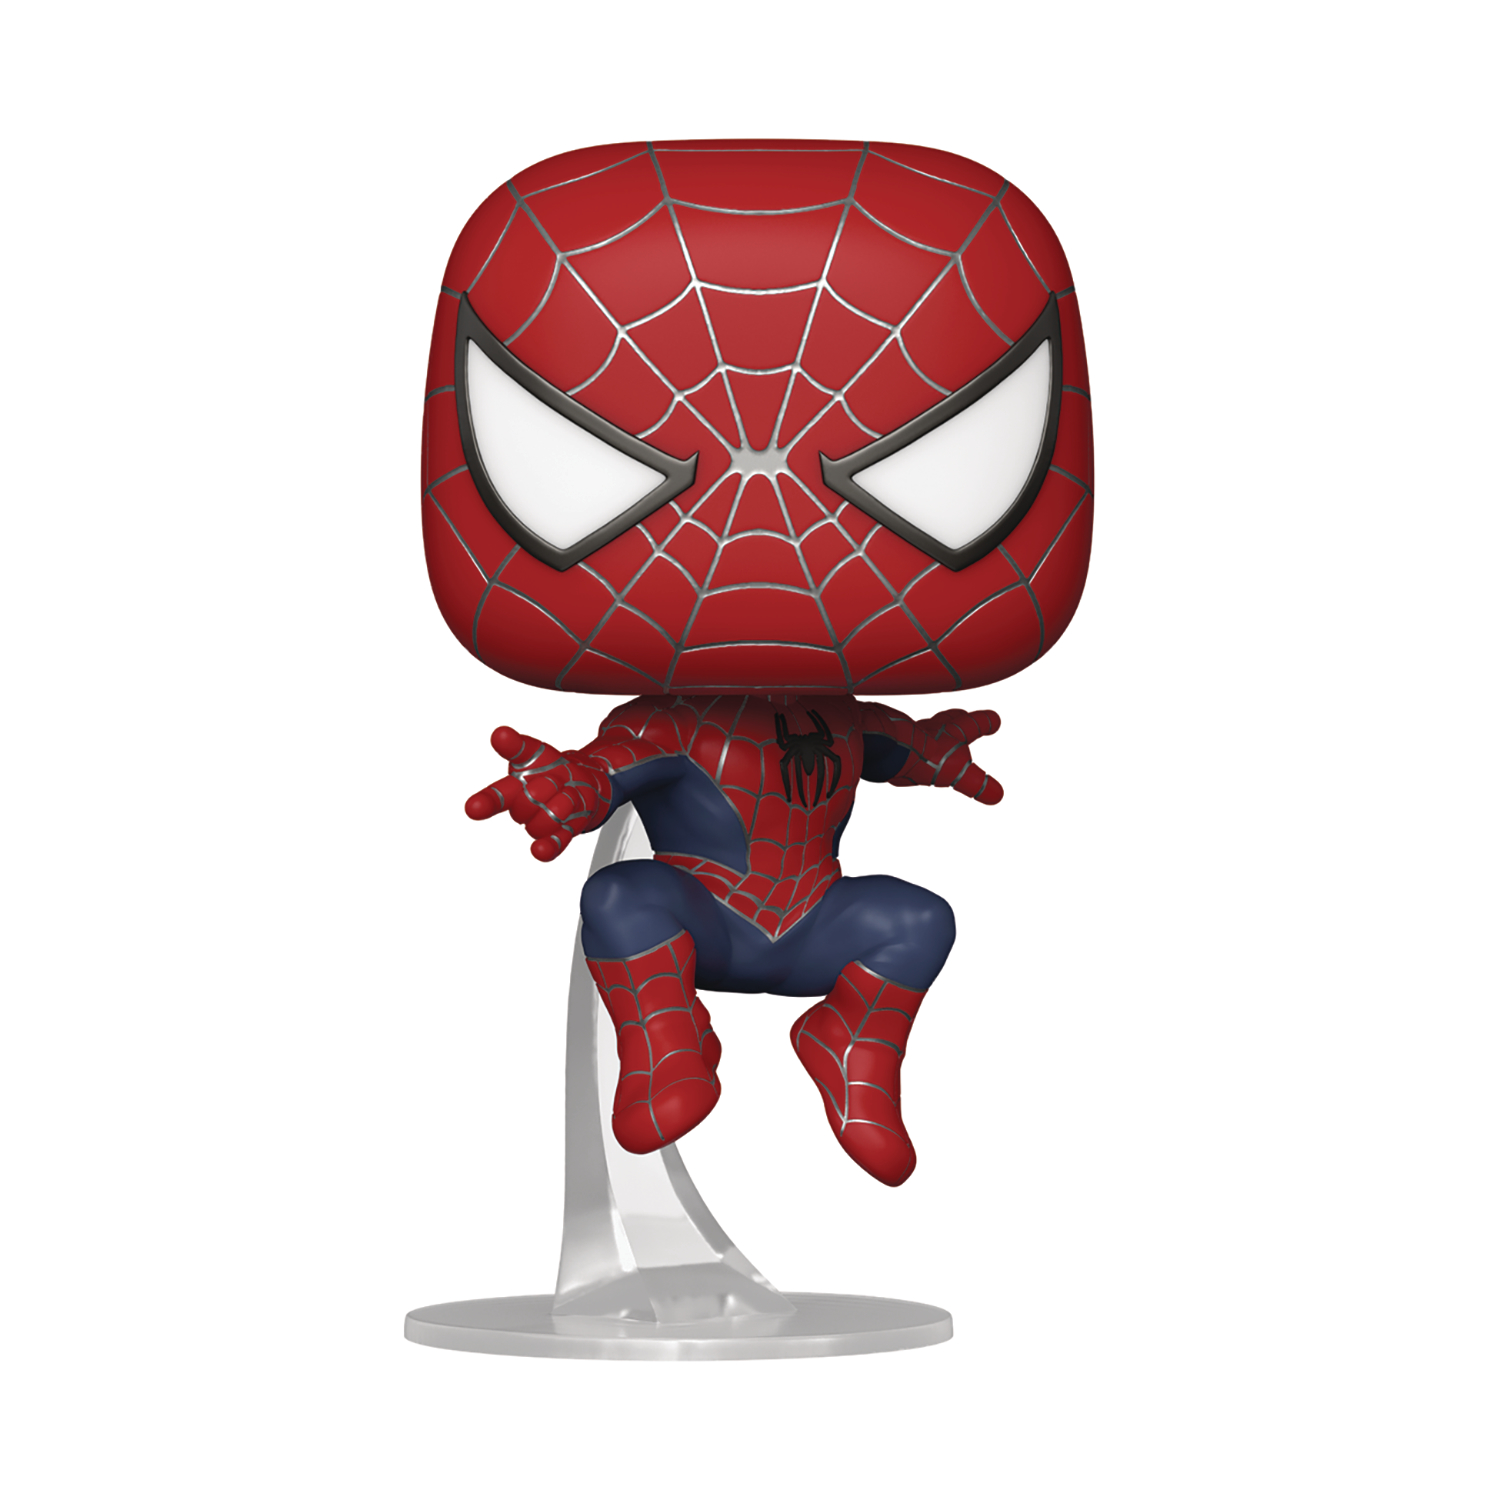 Pop Marvel Spider-Man No Way Home Spider-Man 2 Vinyl Figure 